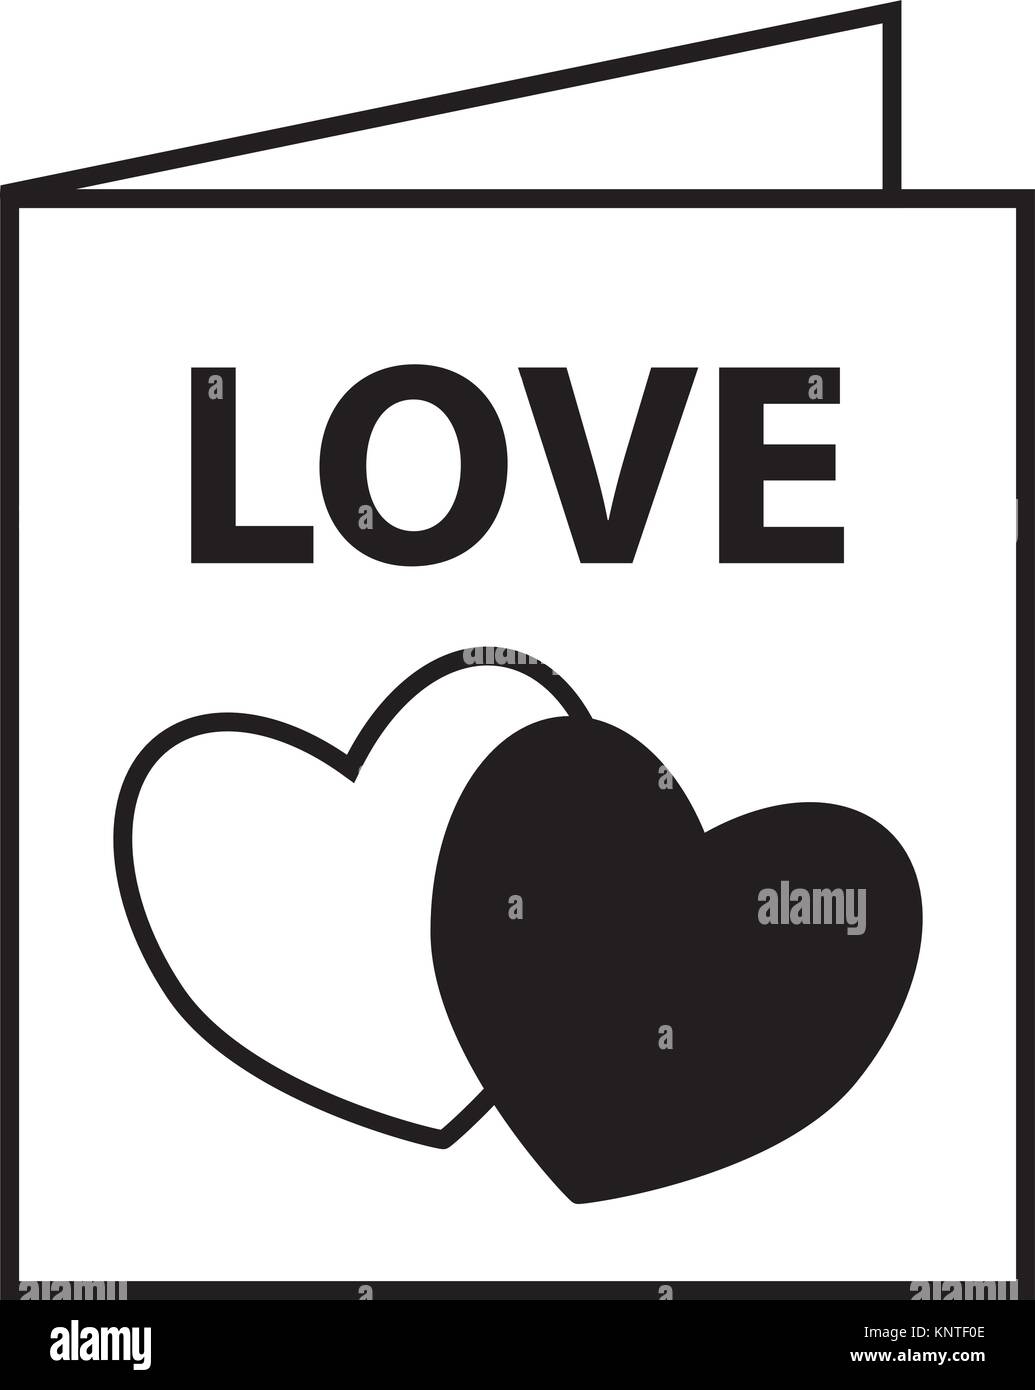 Tarjeta postal o tarjeta de felicitación para el Día de San Valentín o San Valentin Corazones o formas de corazón el concepto de pasión amorosa valentine San Valentín blanco aislado Ilustración del Vector